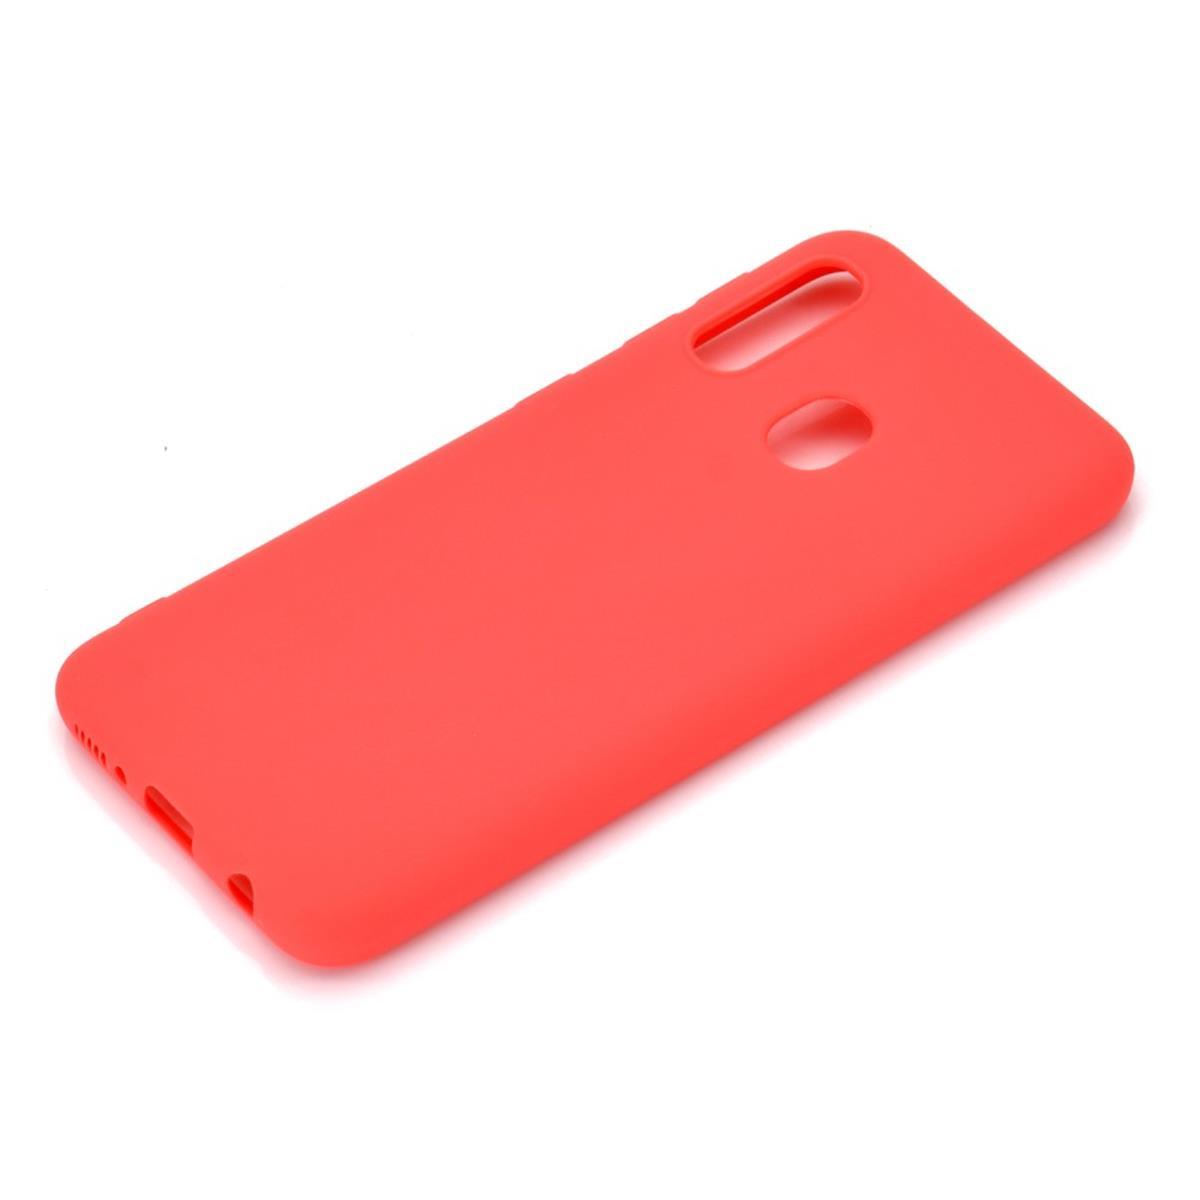 Hülle für Samsung Galaxy A20e Handyhülle Silikon Cover Schutzhülle Soft Case matt Rot